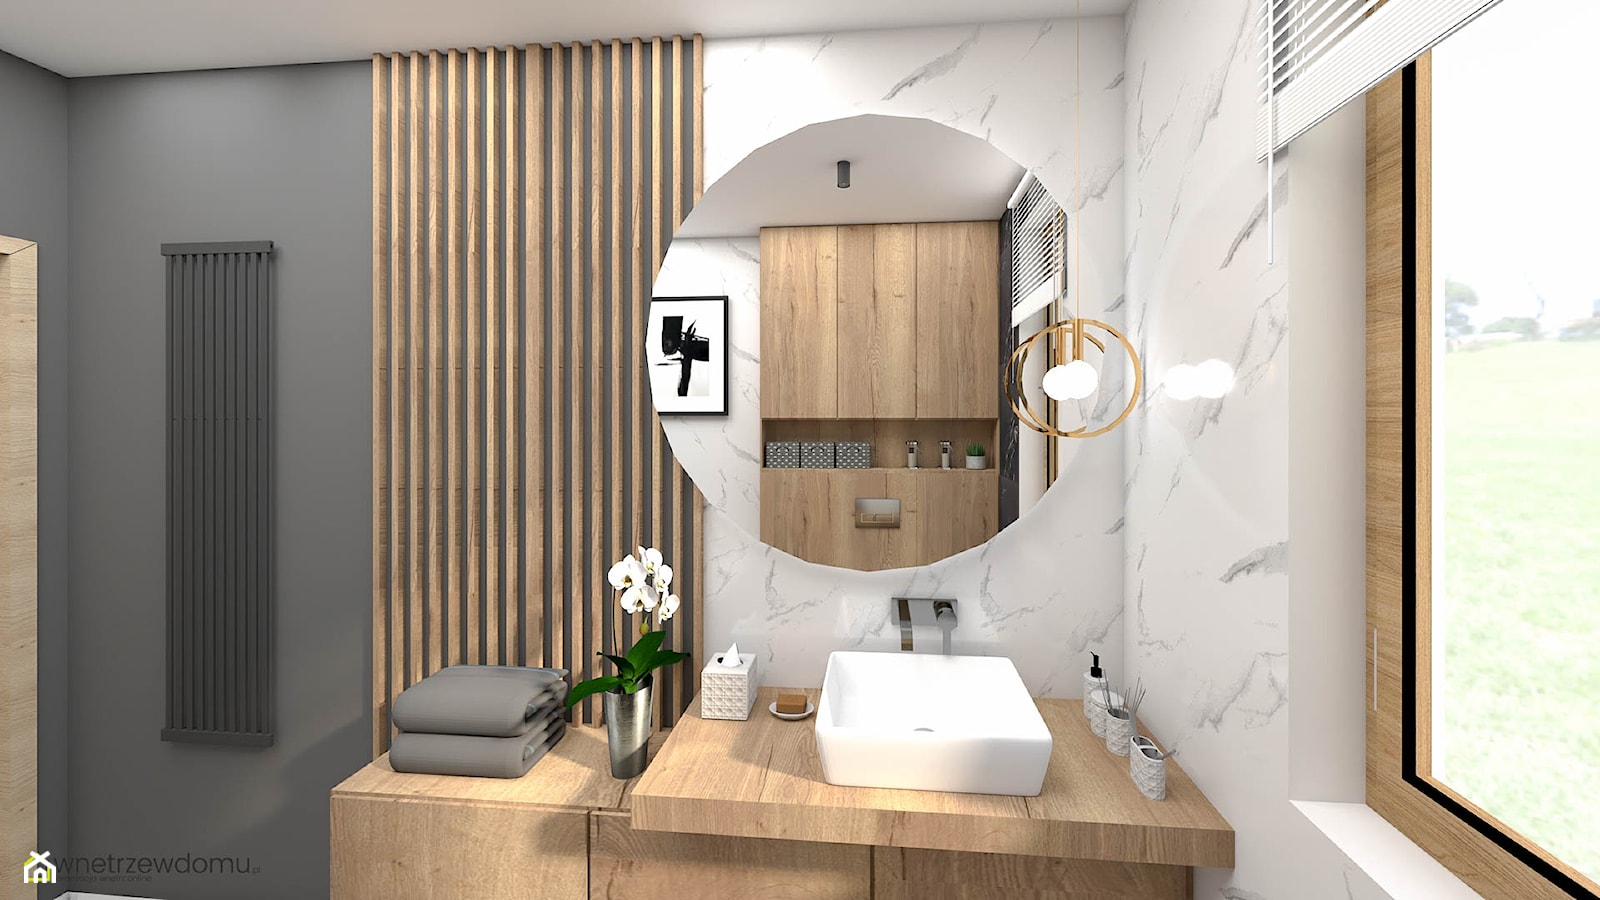 Niewielka marmurowa łazienka - zdjęcie od wnetrzewdomu - Homebook